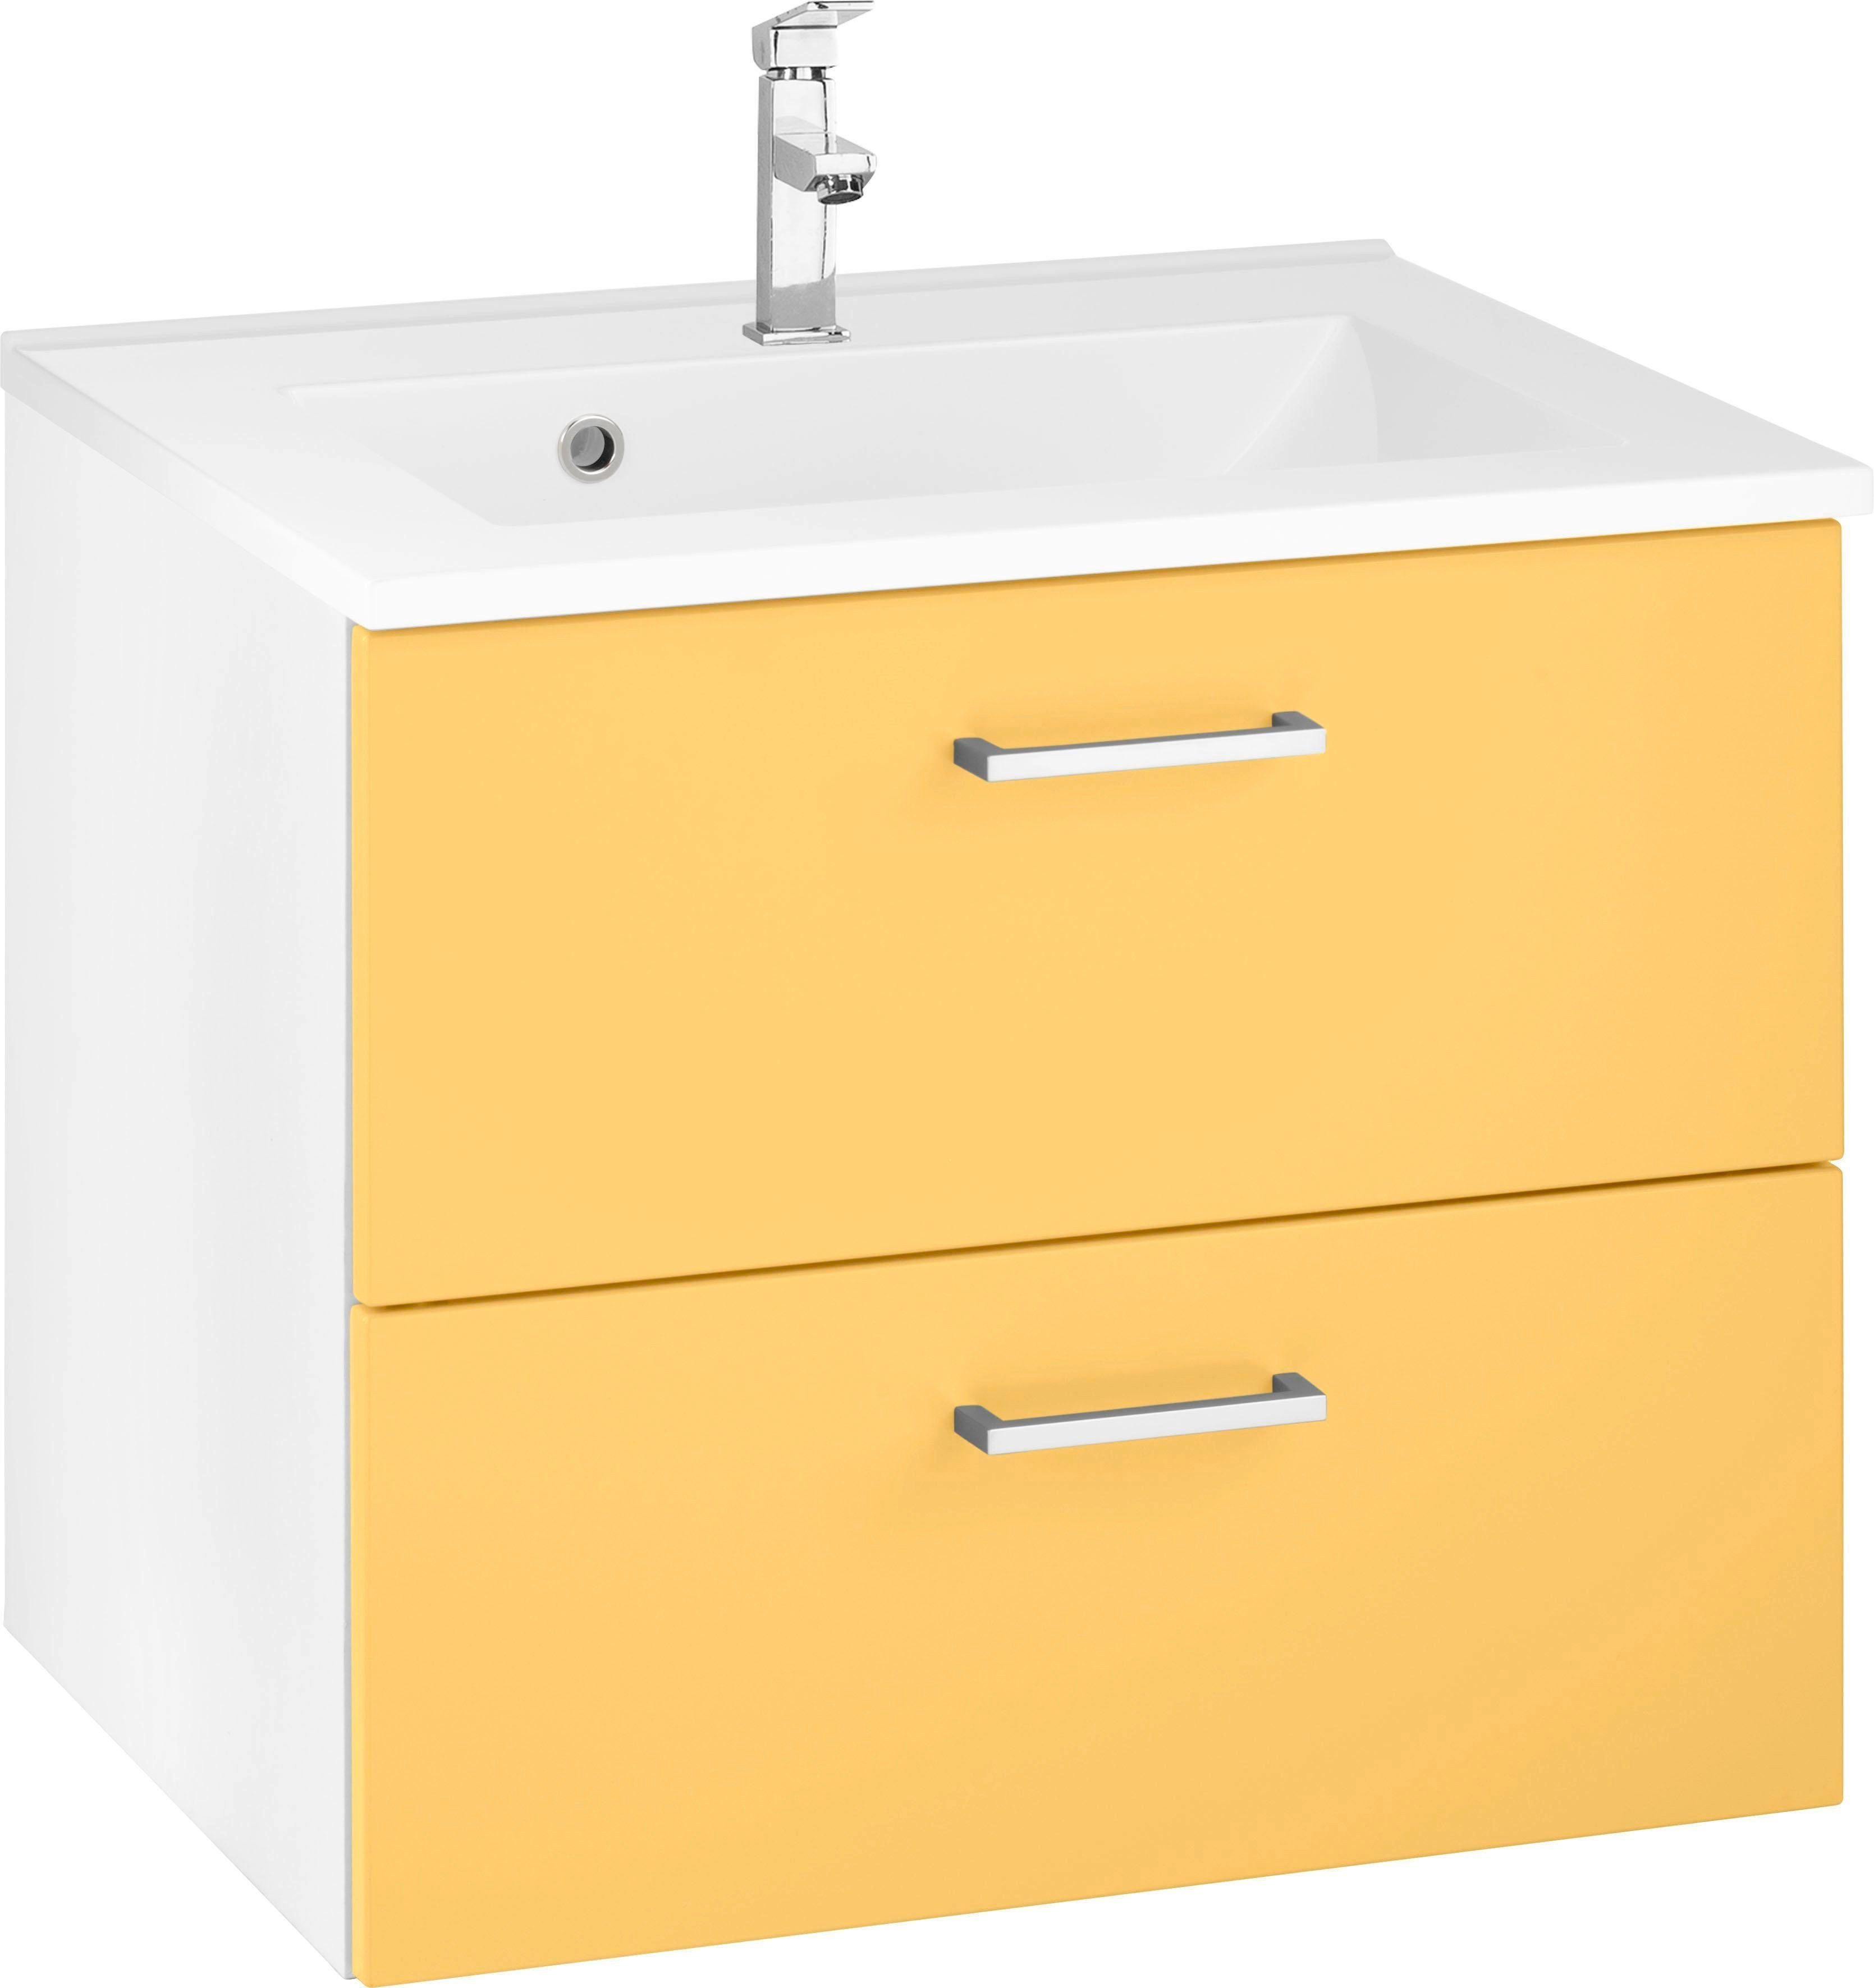 HELD MÖBEL Waschbeckenunterschrank Ribera Badmöbel, Waschtisch inkl. Waschbecken, Breite 60 cm gelb/gelb/weiß | Waschbeckenunterschränke